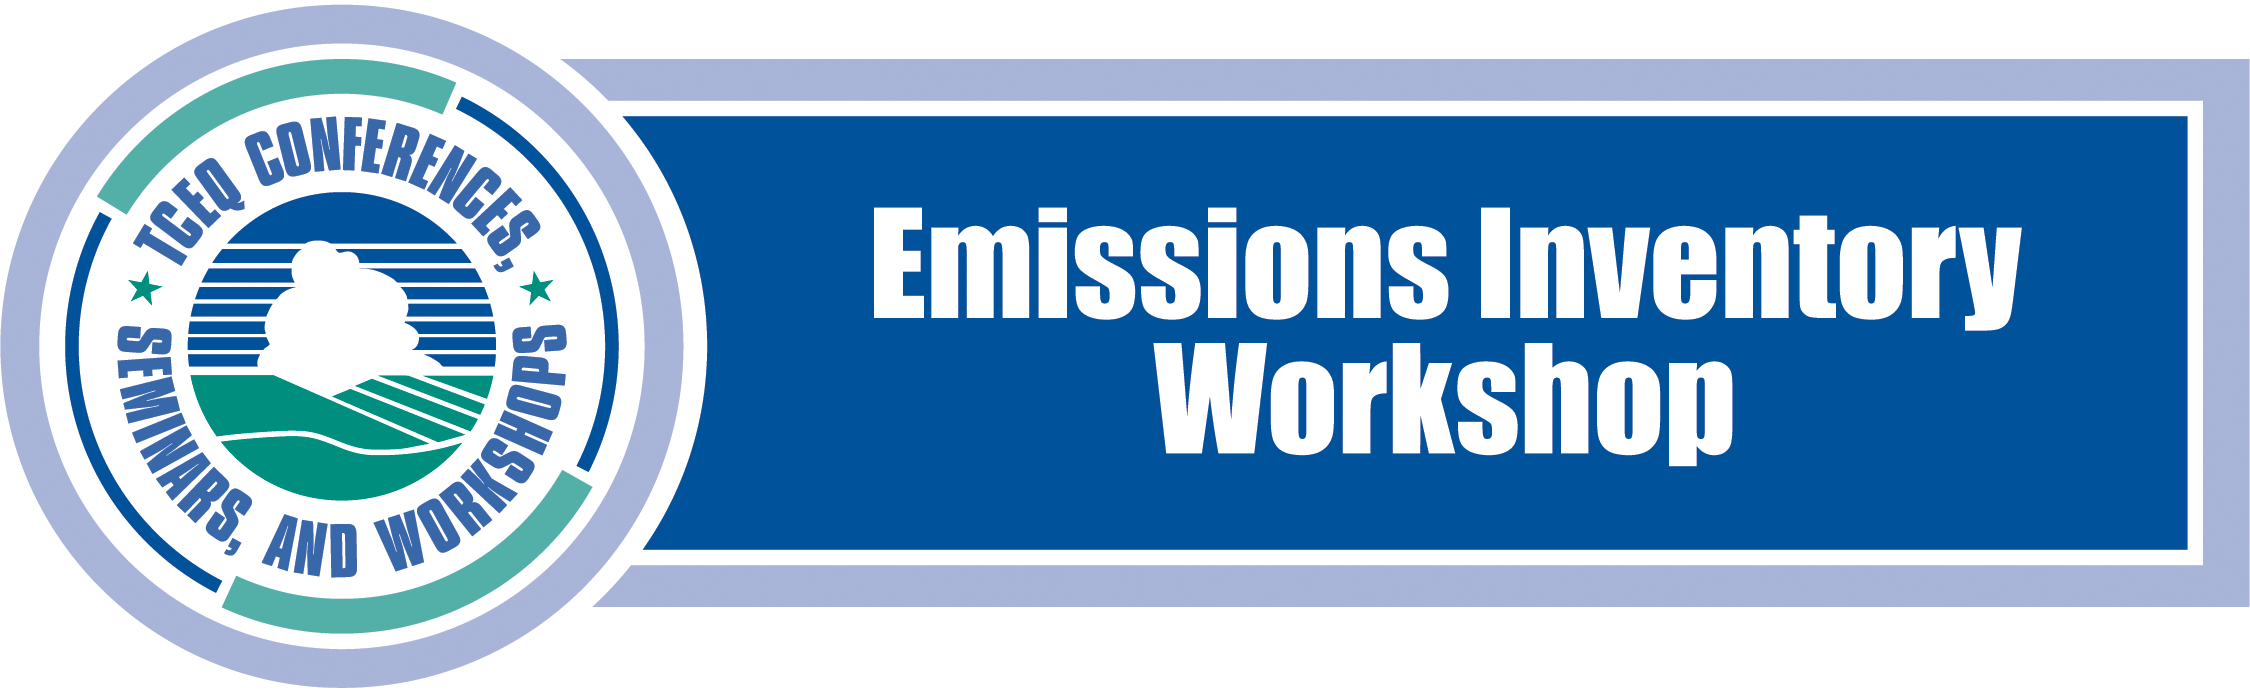 Emissions Inventory Workshop Banner